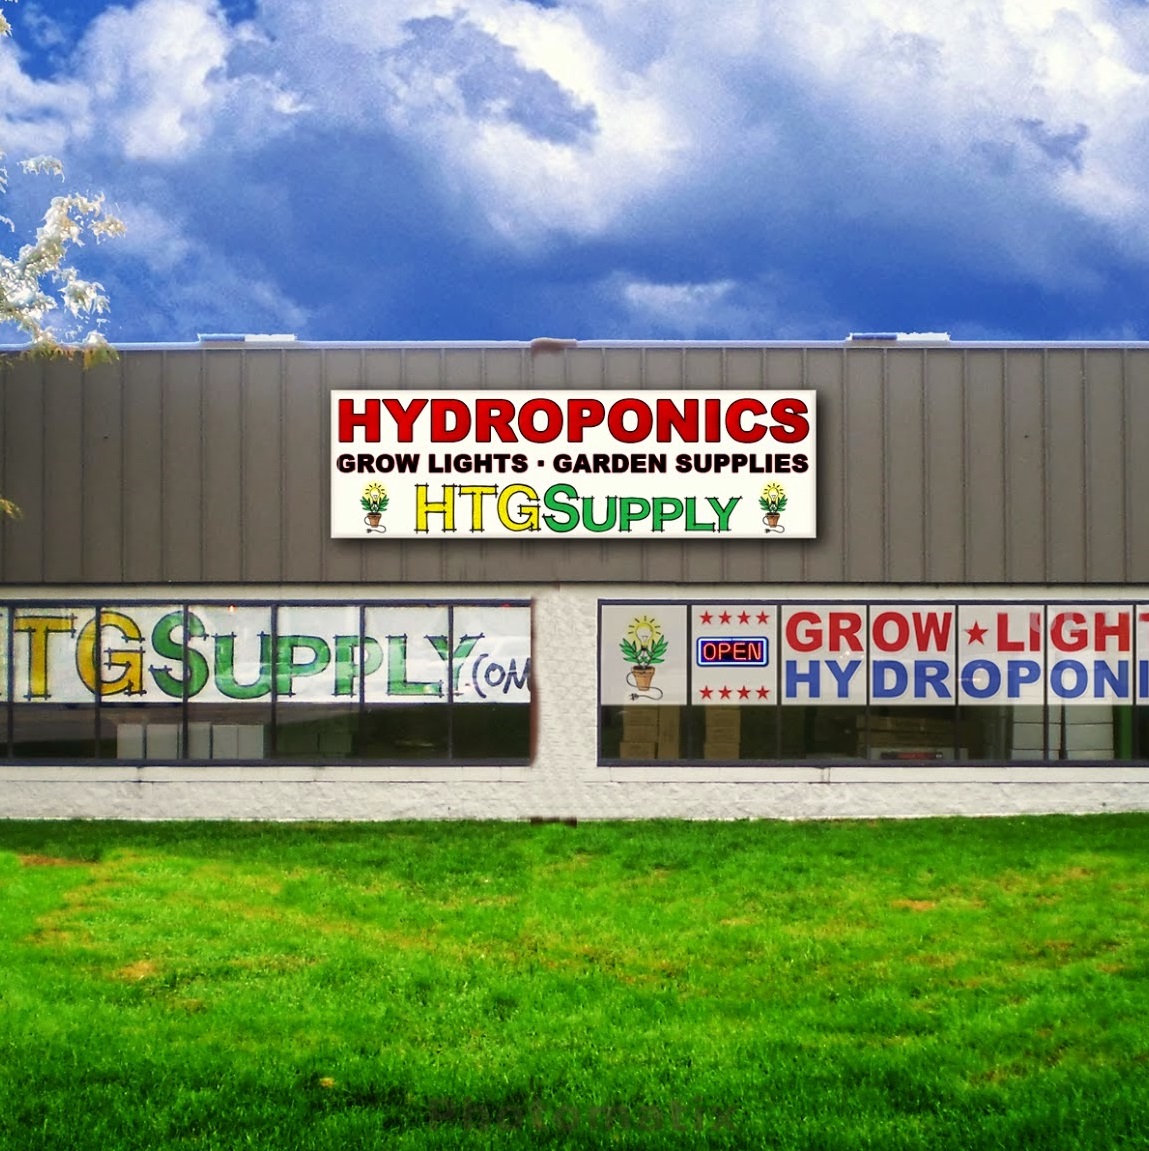 Htg Supply Hydroponics Grow Lights 28000 Groesbeck Hwy